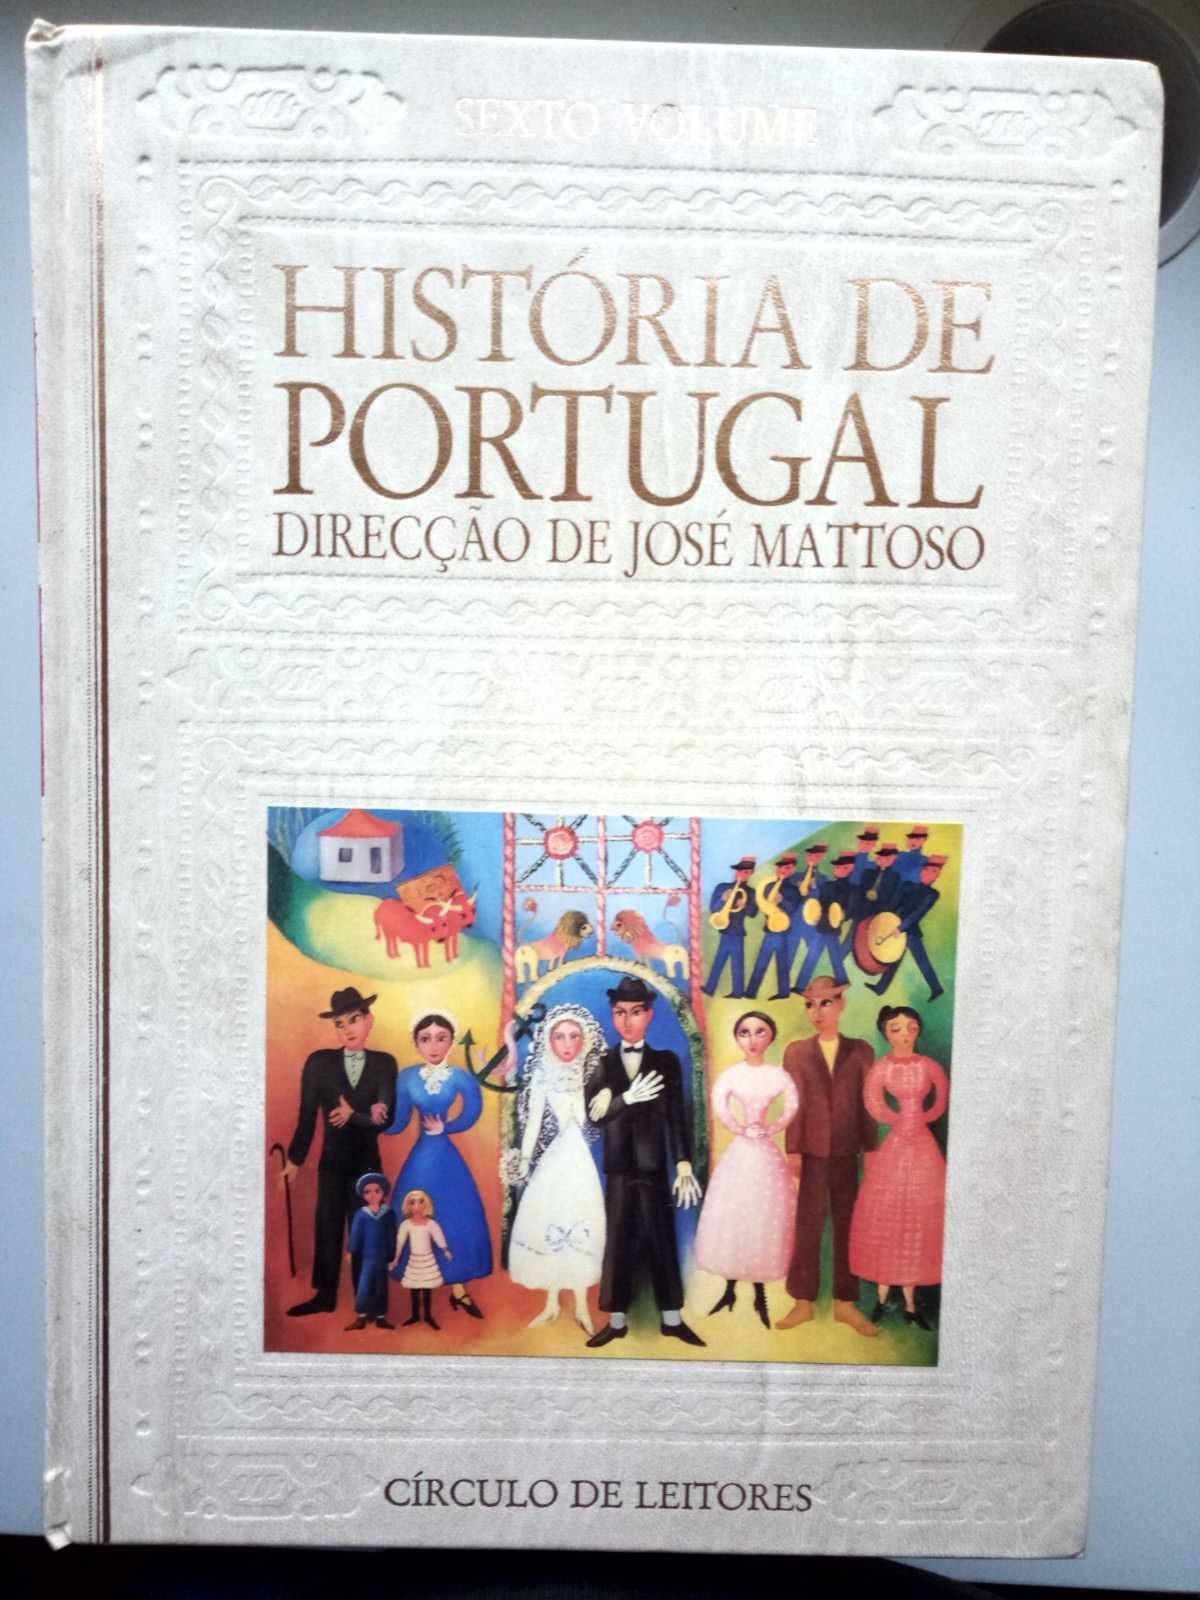 eciclopedia historia de portugal de 8 volumes, ediçao 90s